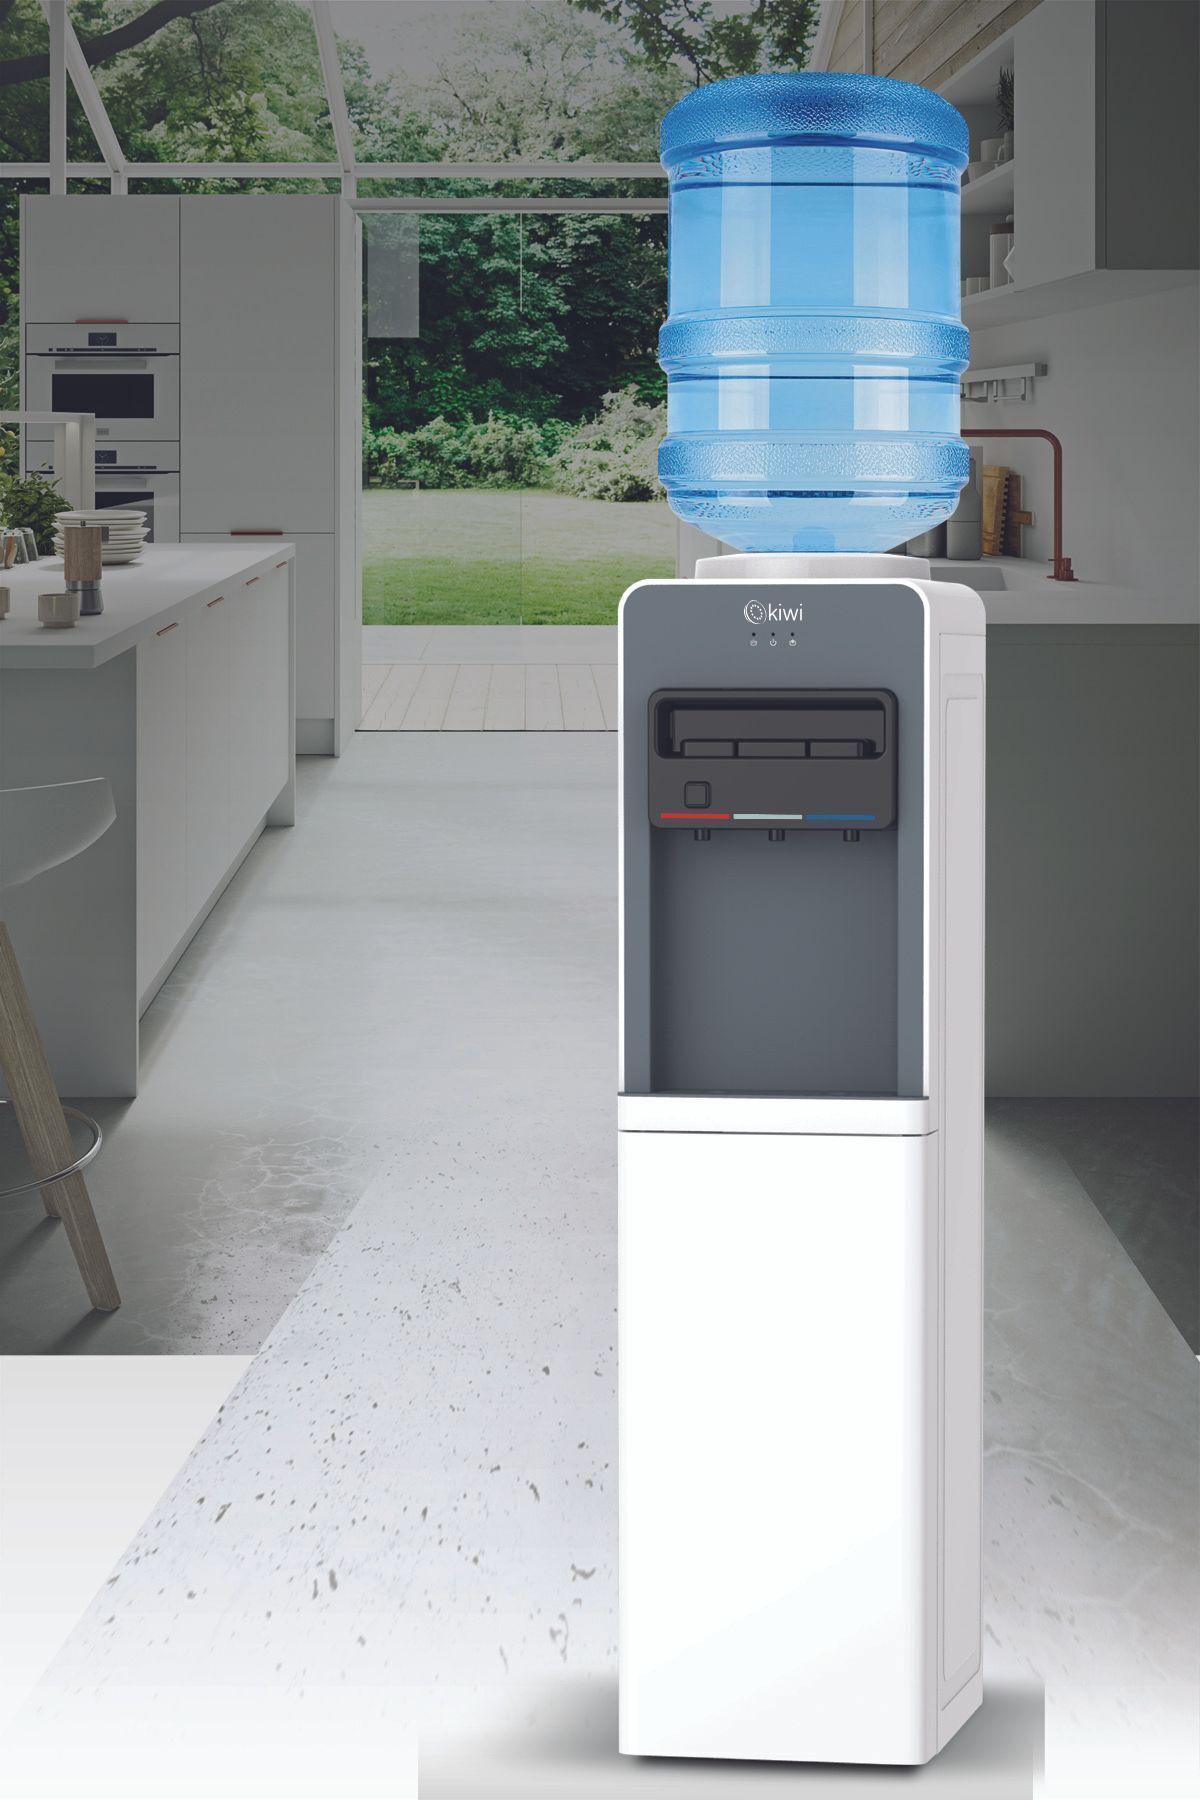 Kiwi Su Sebili & Kwp-8553 Beyaz ( Water Dispenser) Sıcak -soğuk -ılık & Multi Functions